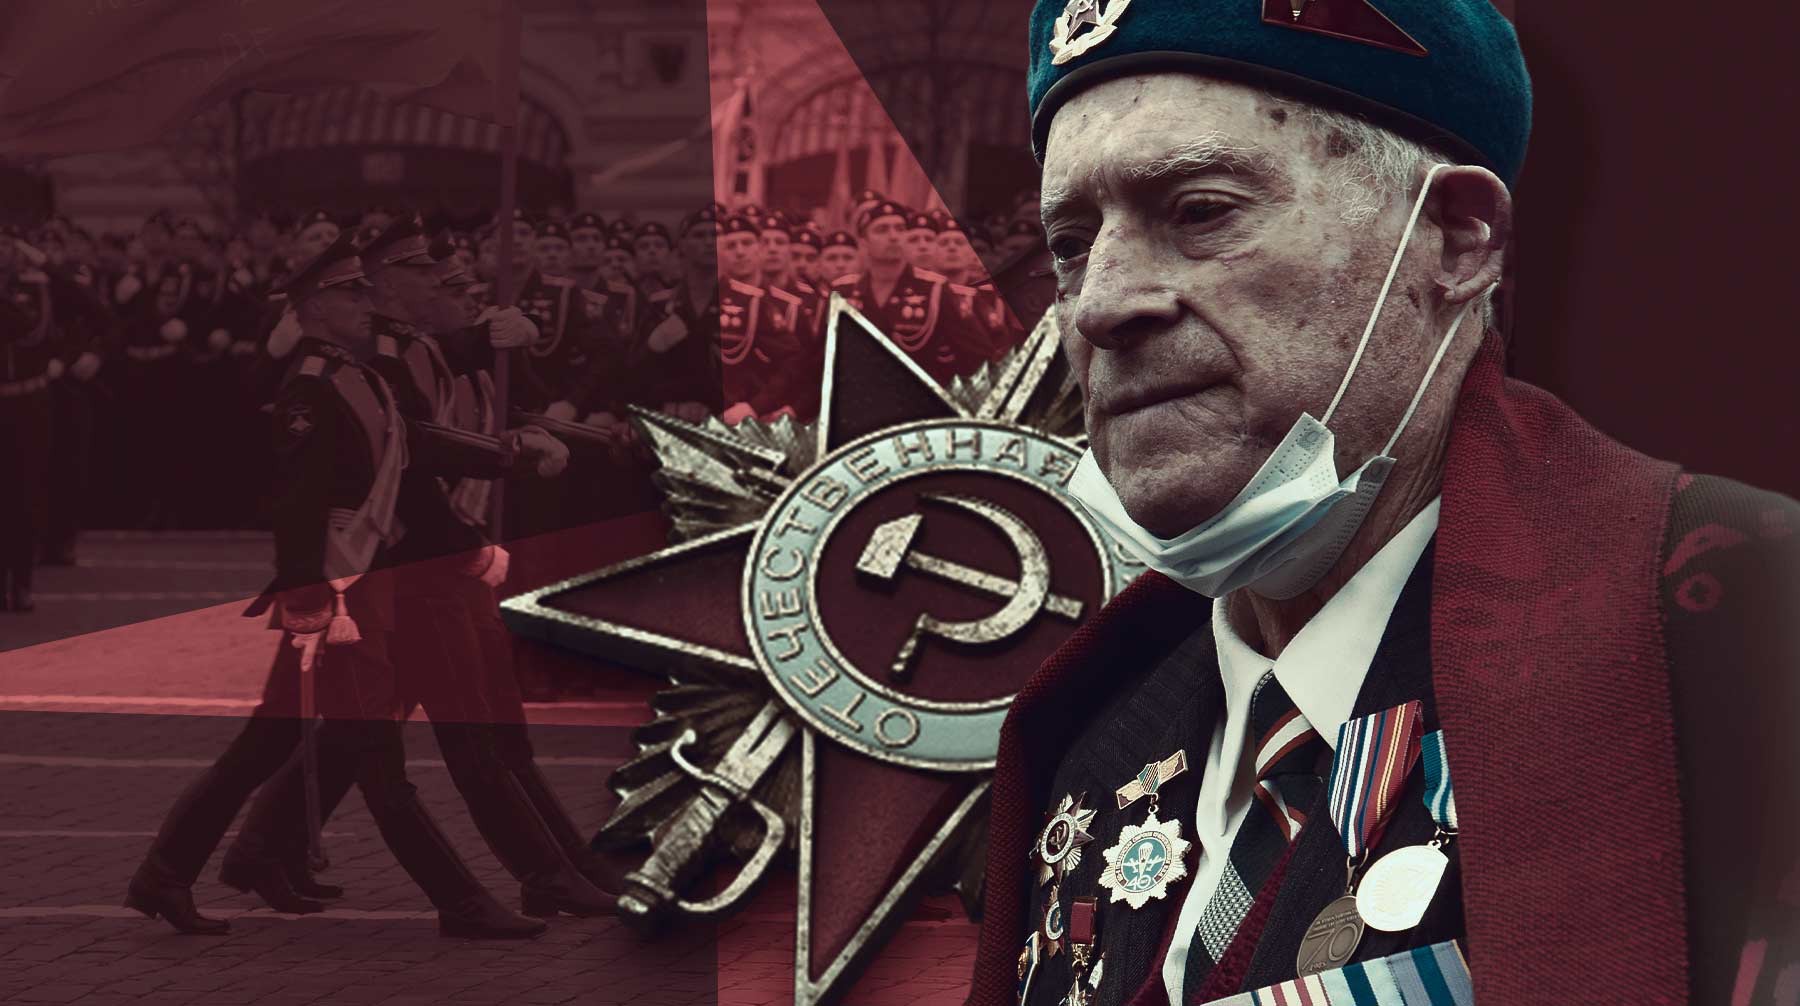 Dailystorm - «Смотри, сынок! Это ветеран войны». Как в Москве встретили день Победы